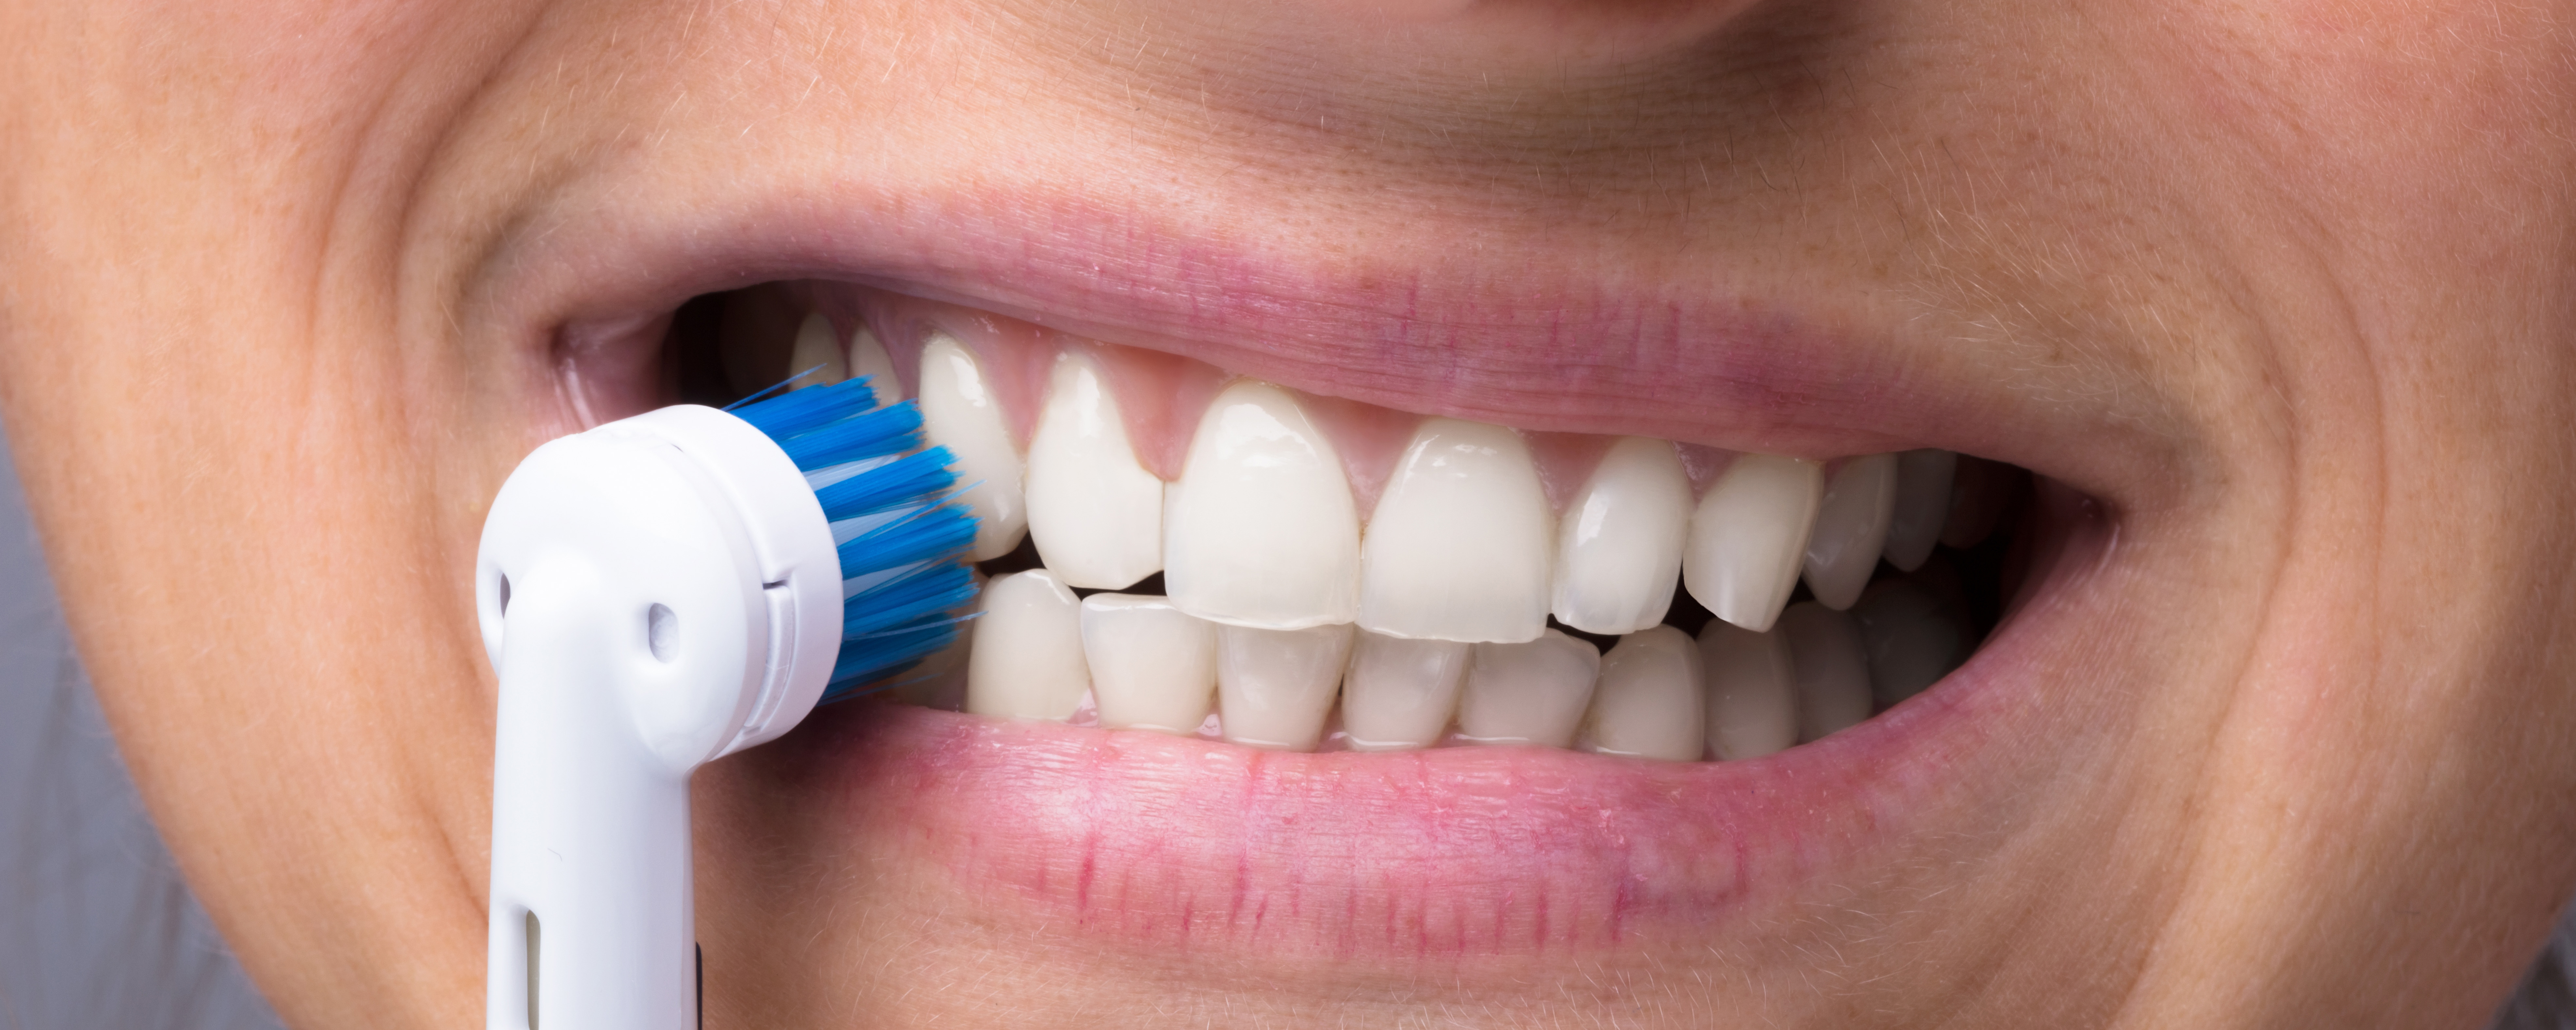 Serie: Hora est. Preventie en mondhygiëne: instructies, de tandenborstel en mondspoelmiddel